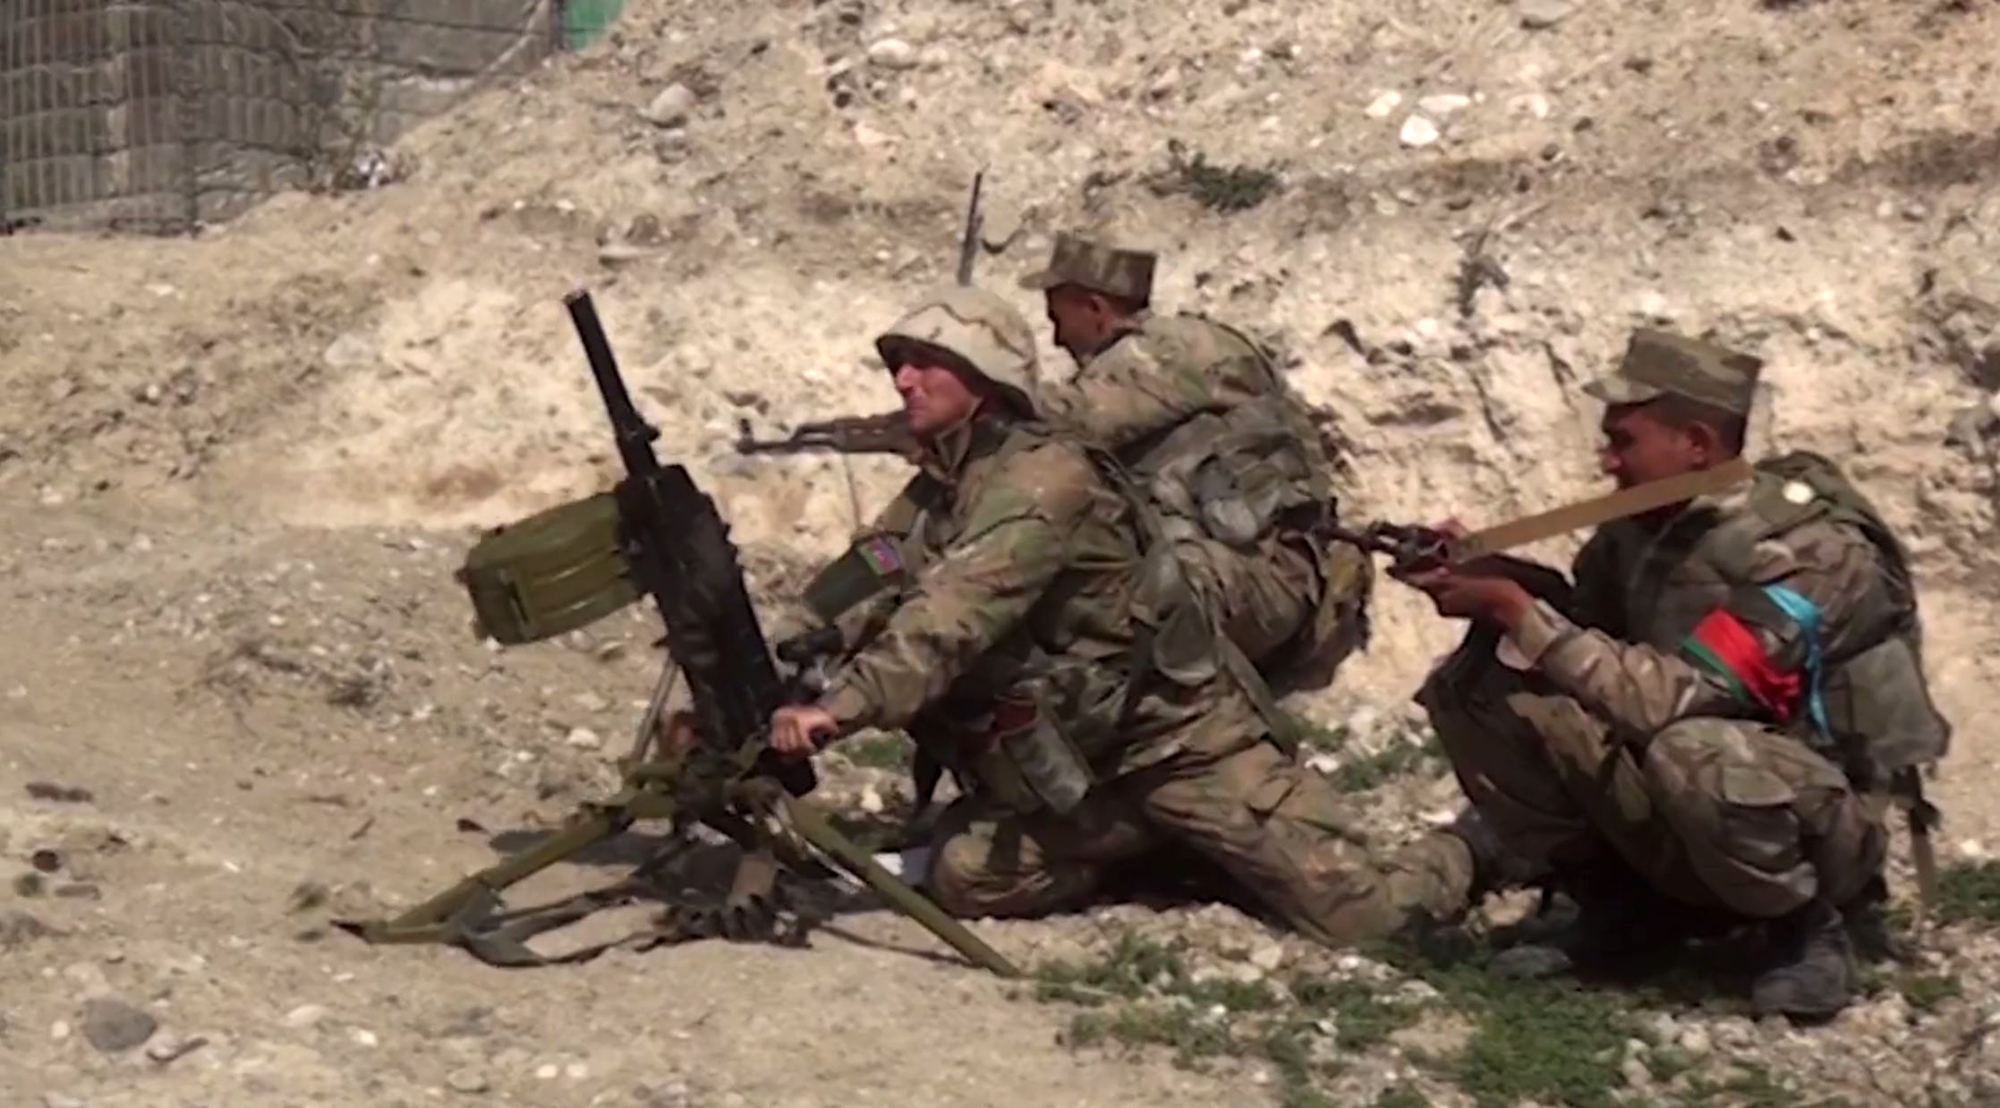 جنود أذريون كما ظهروا في فيديوا نشرته وزارة الدفاع الأذرية بالقرب من حدود اقليم ناغورنو قره باغ - أ ف ب.jpg